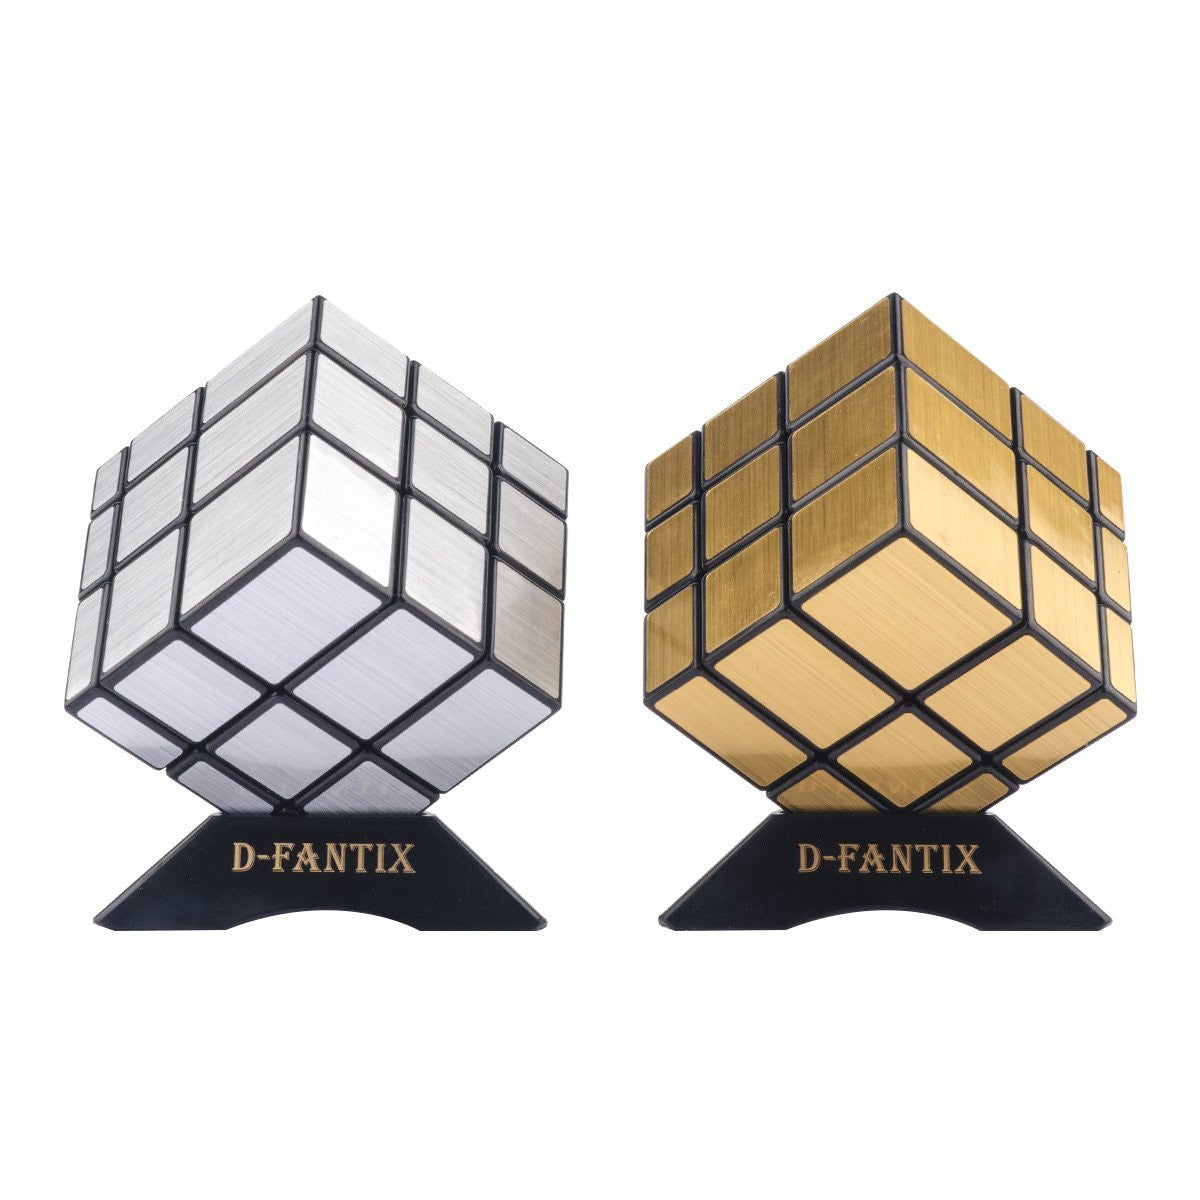 SHONCO Cube Magique,Gear Cube,Speed Cube avec Une Structure D